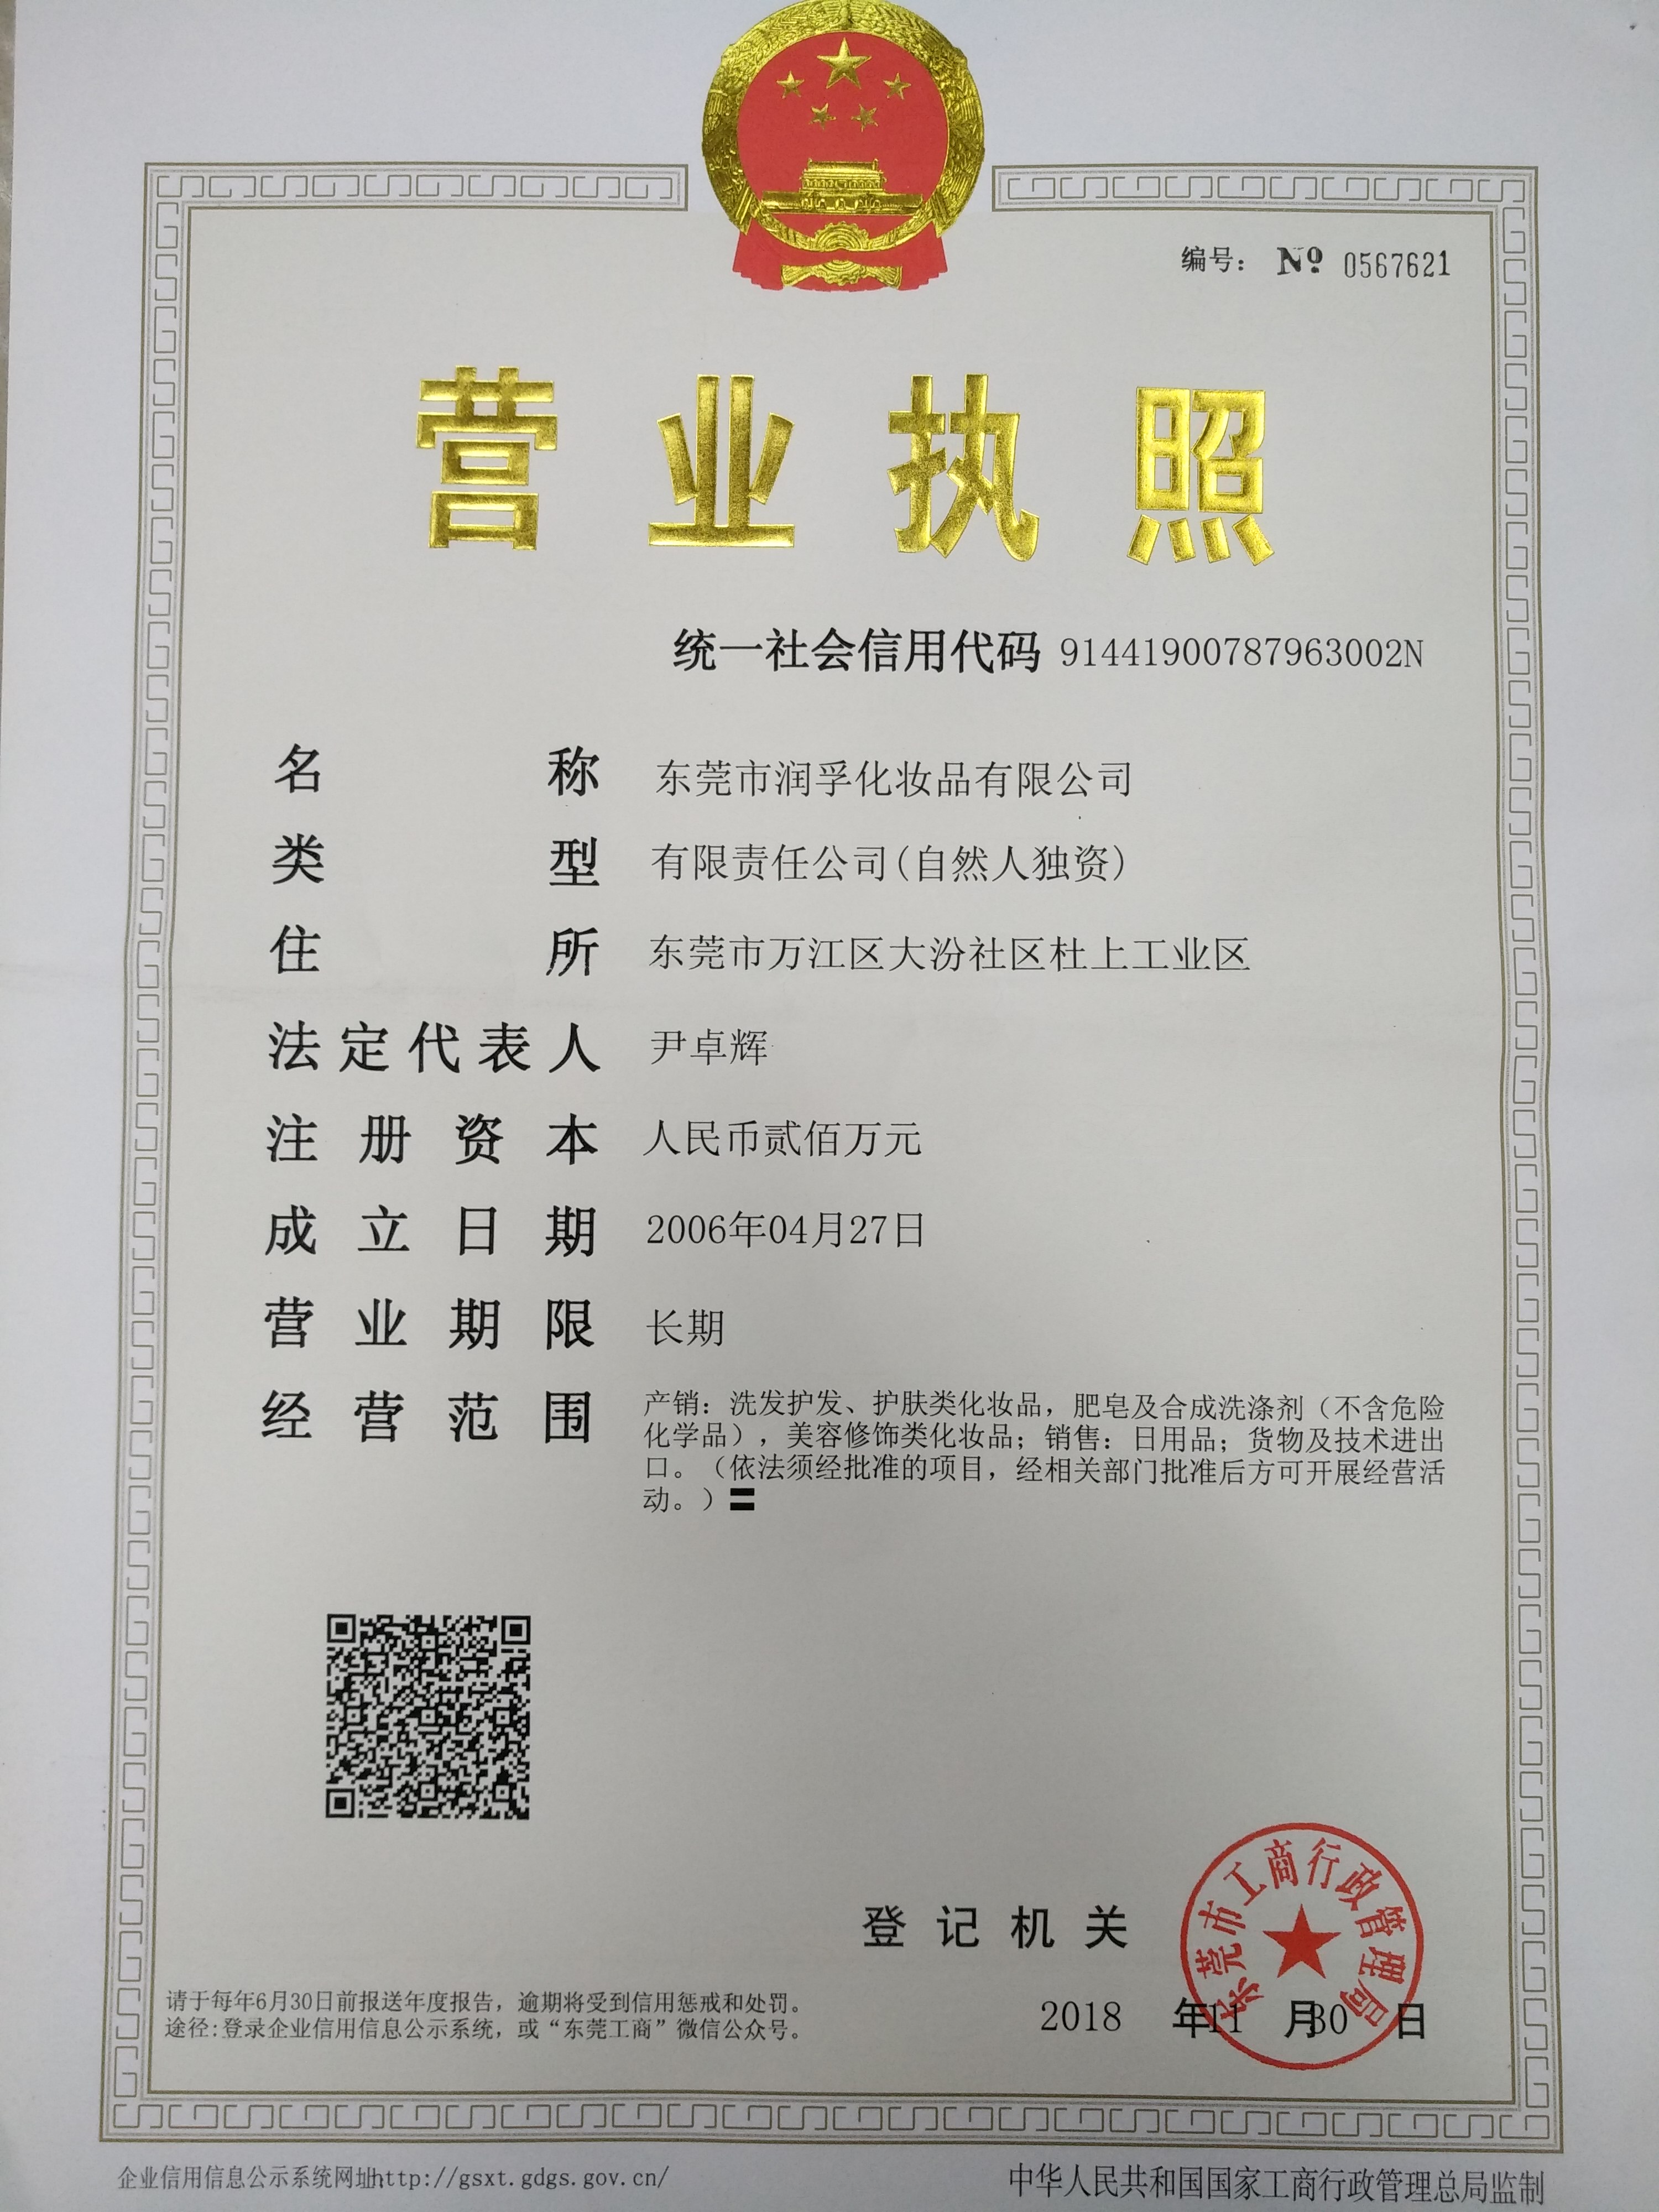 Runfu Cosmetics Business License